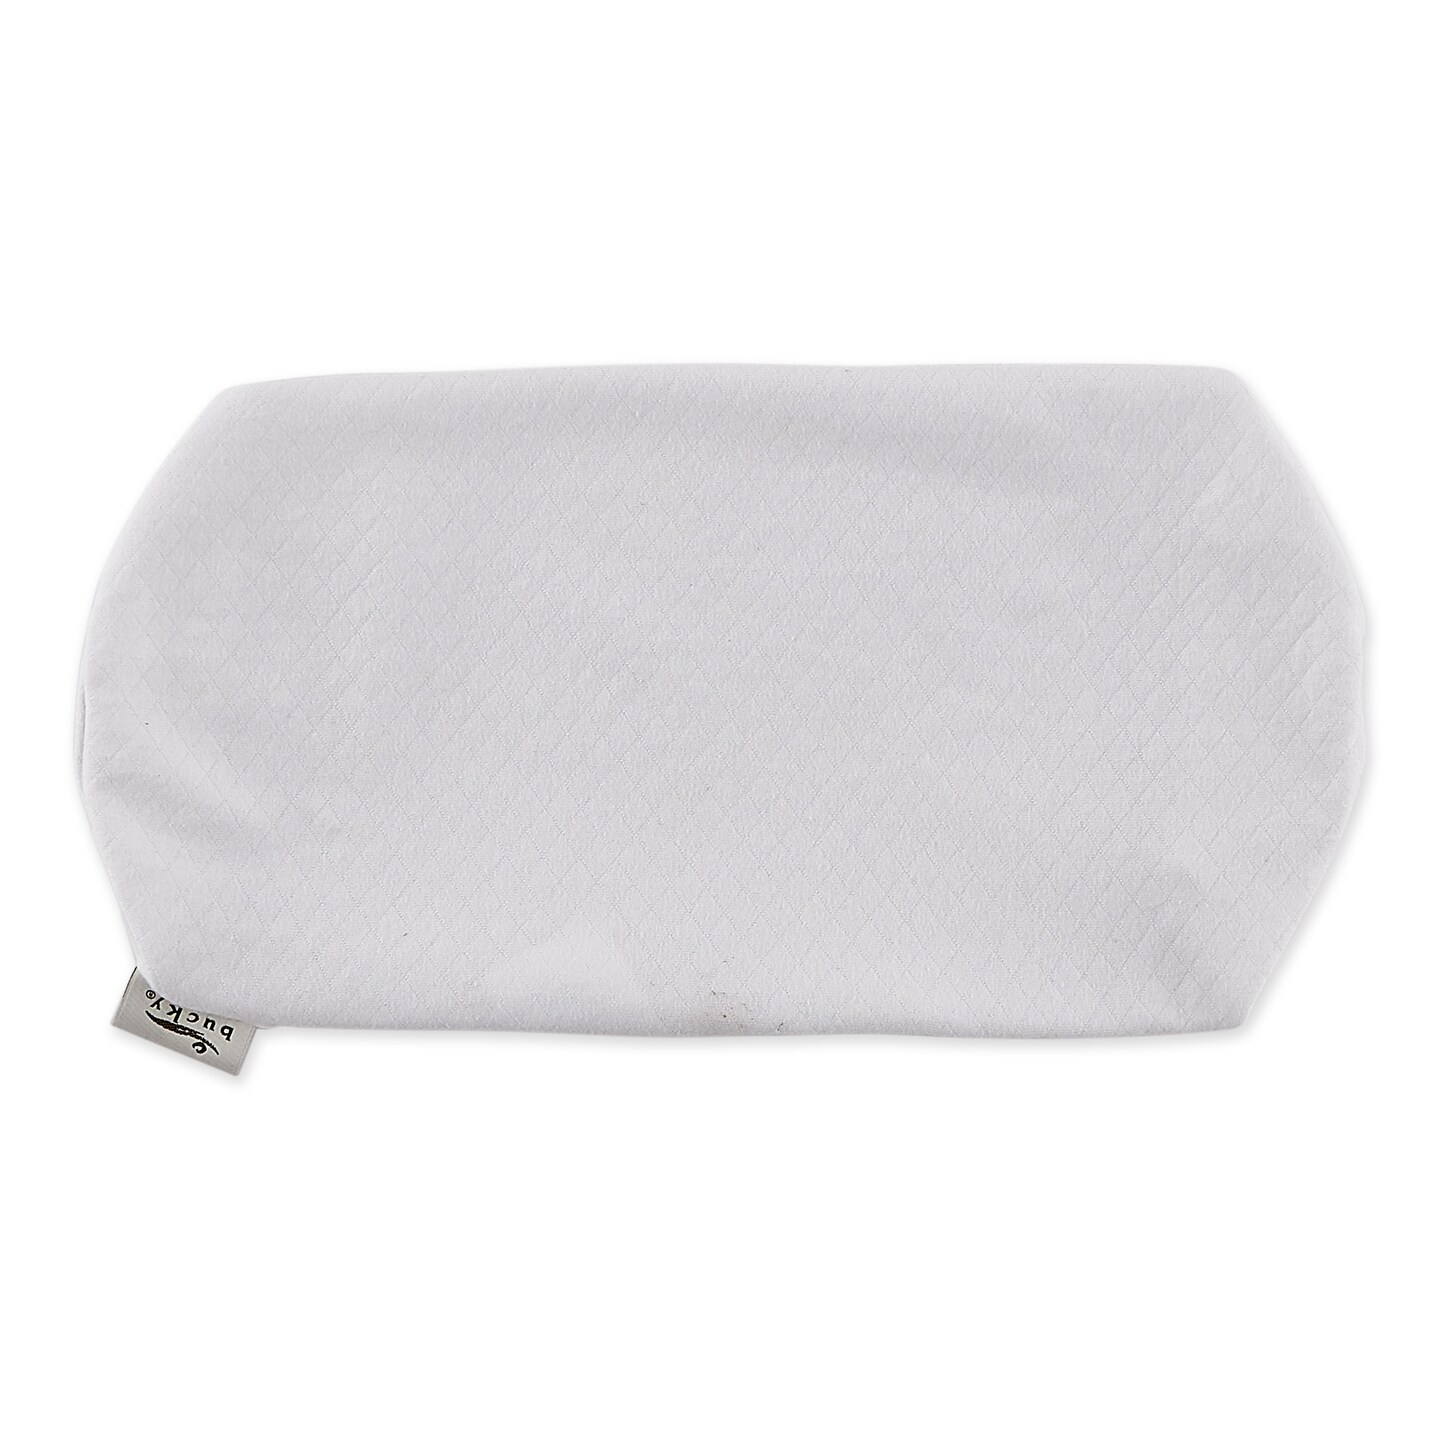 Bolster Pillow Cover - White | Michaels